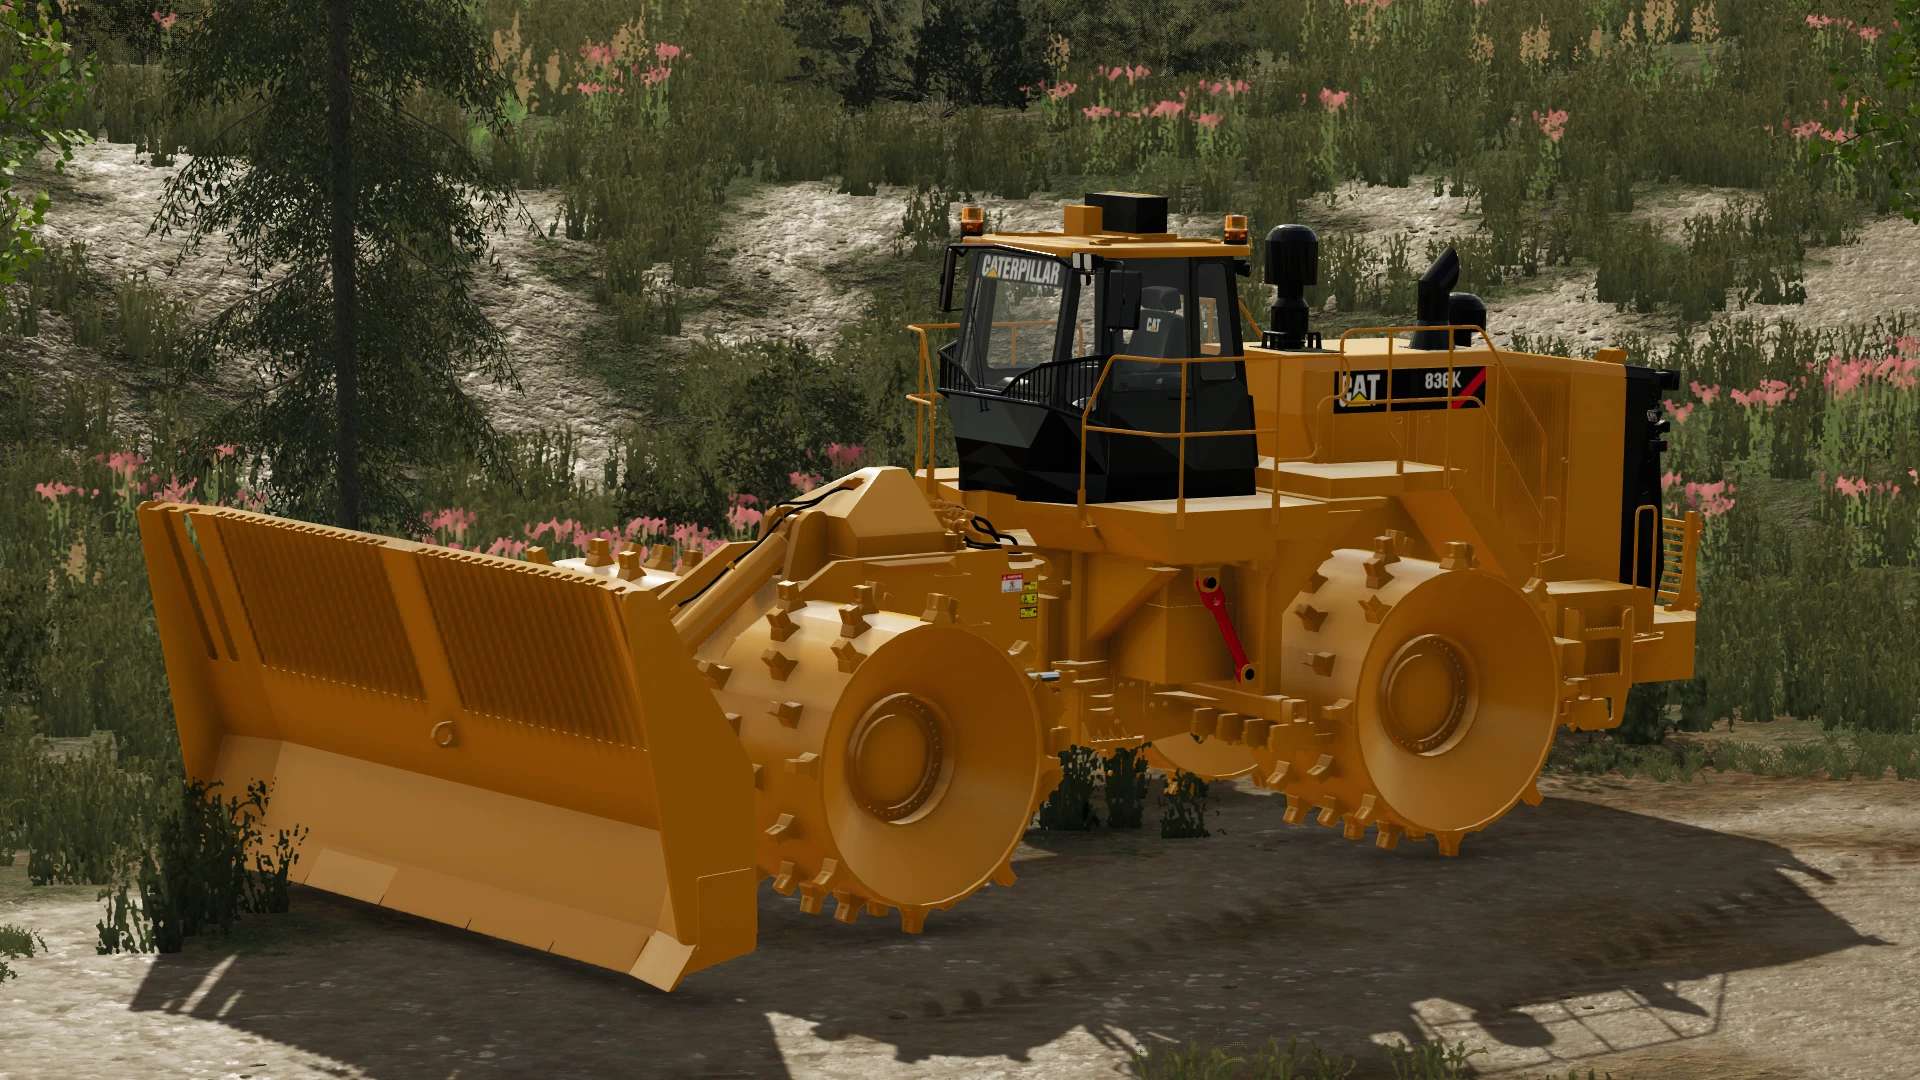 Fs22 Caterpillar 836k Landfill Compactor V1103 Fs 22 Forklifts Excavators Mod Download 0660